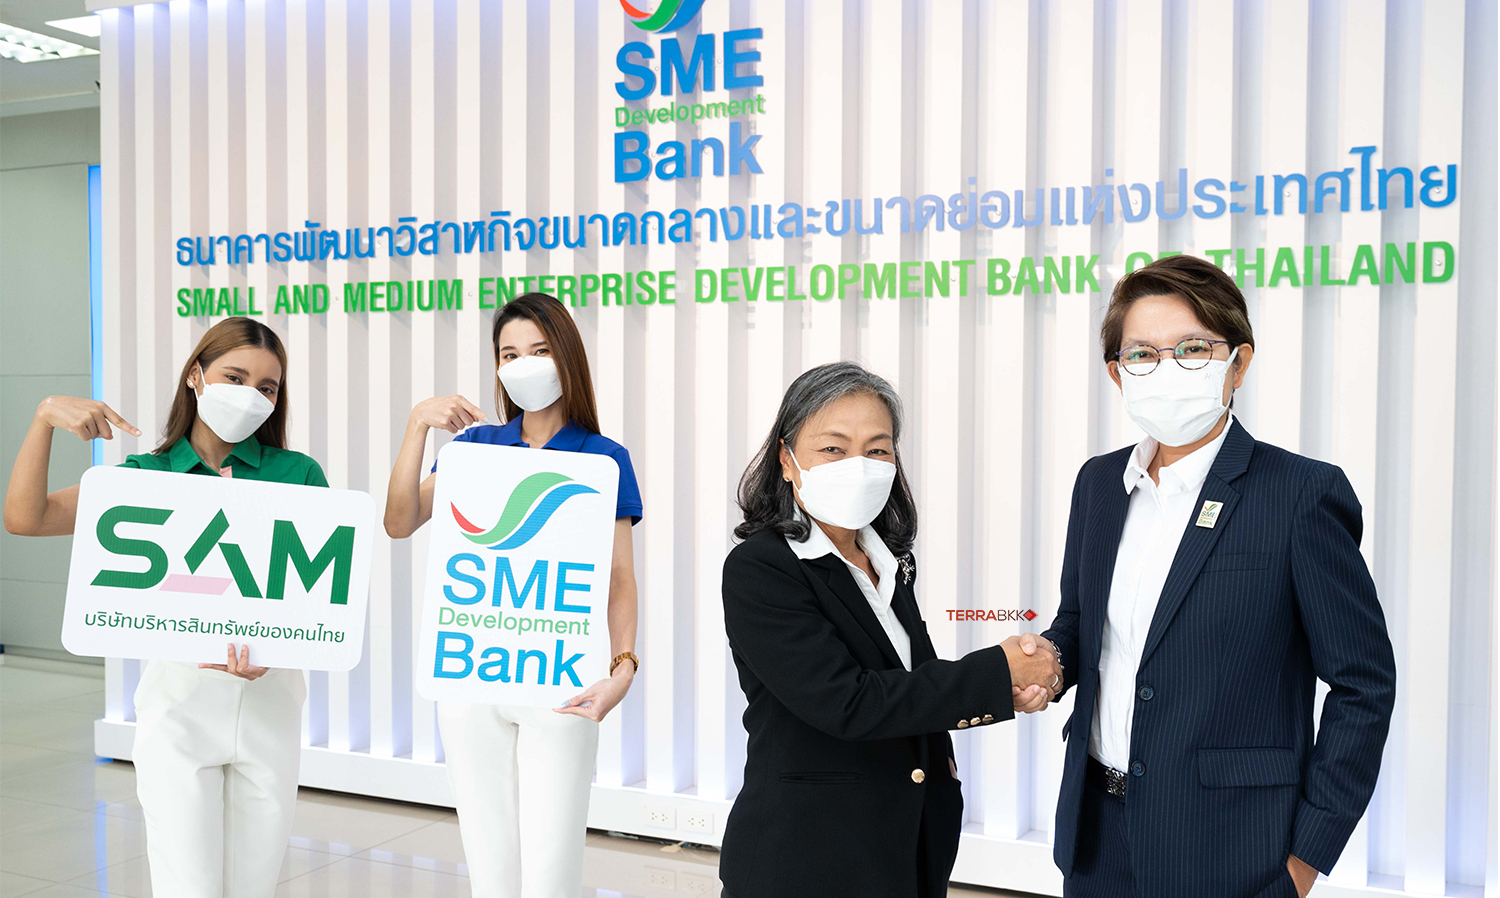 SME D Bank จับมือ SAM ร่วมมือแบบ ‘G To G’  หวังสร้างโอกาสใหม่ให้ลูกหนี้ด้อยคุณภาพ ฟื้นธุรกิจให้เข้าถึงแหล่งทุน